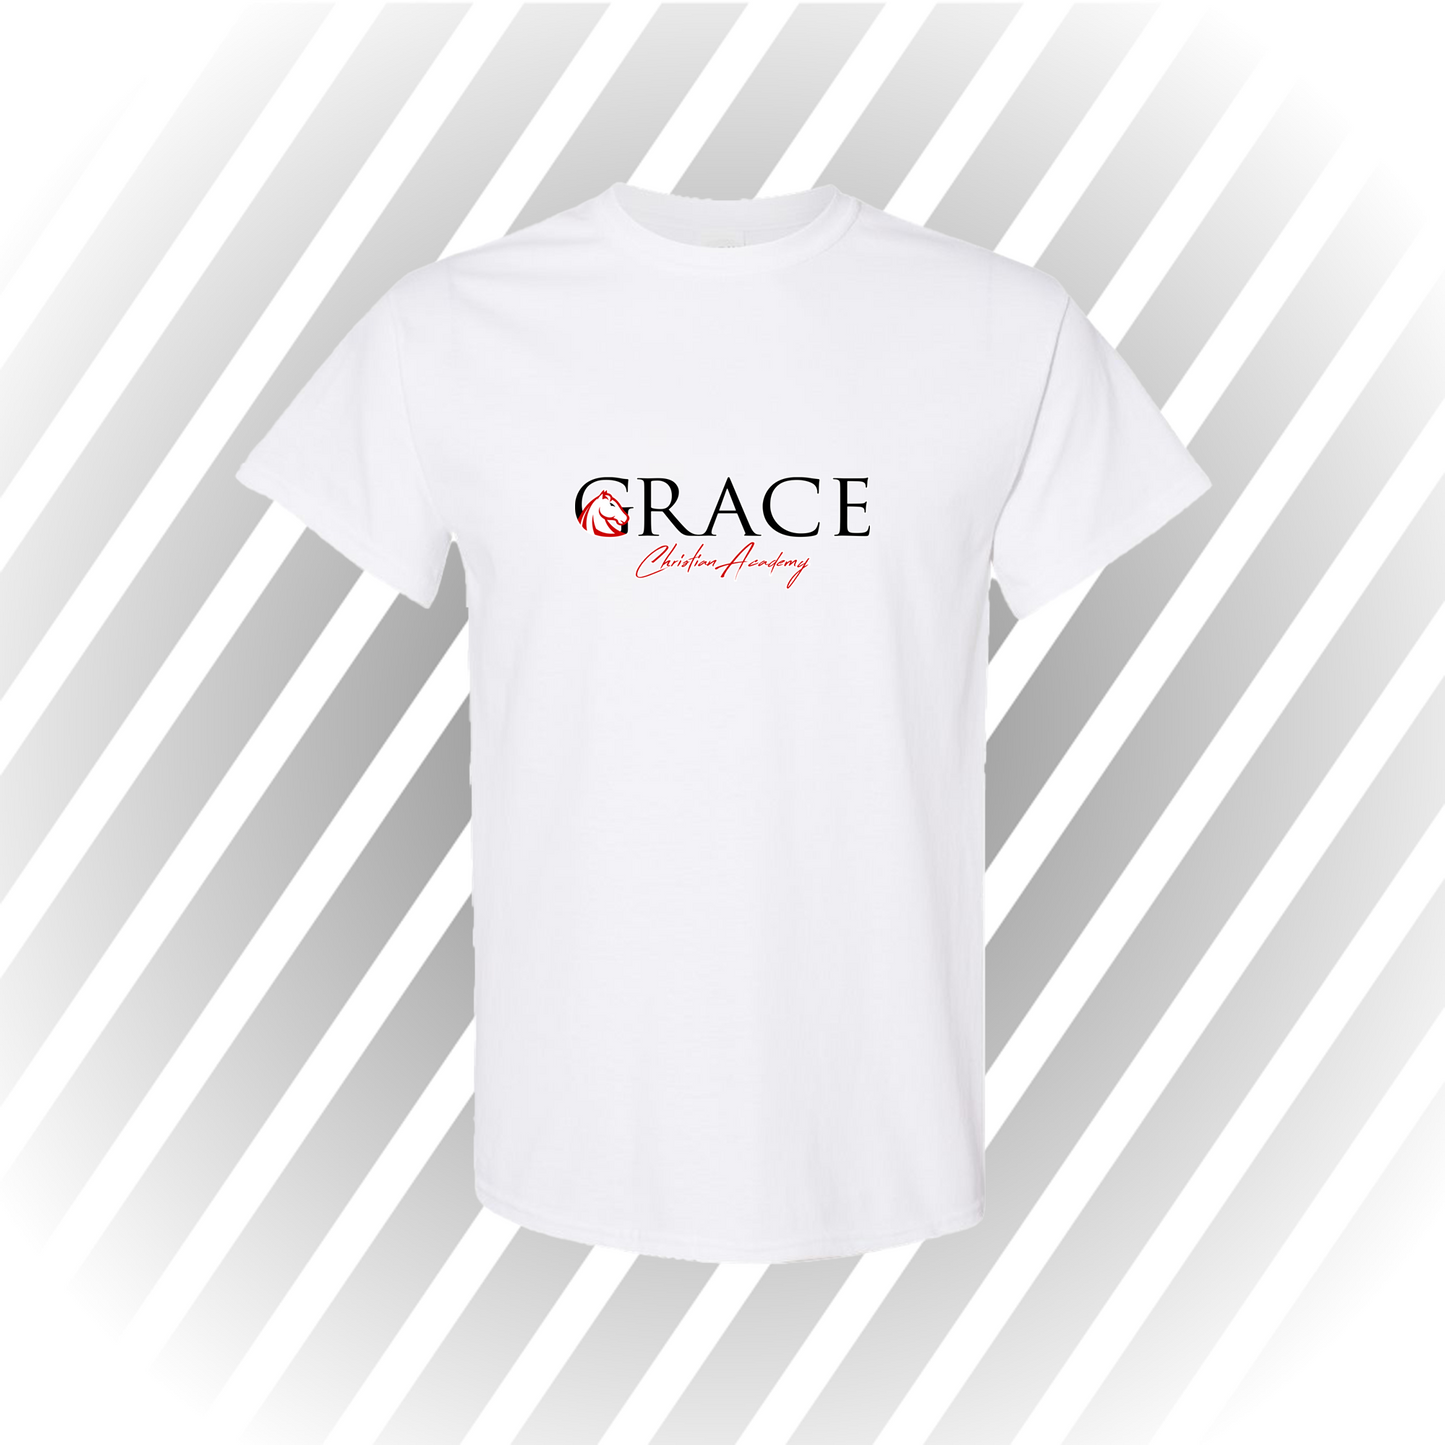 Grace Christian Academy - Short Sleeve